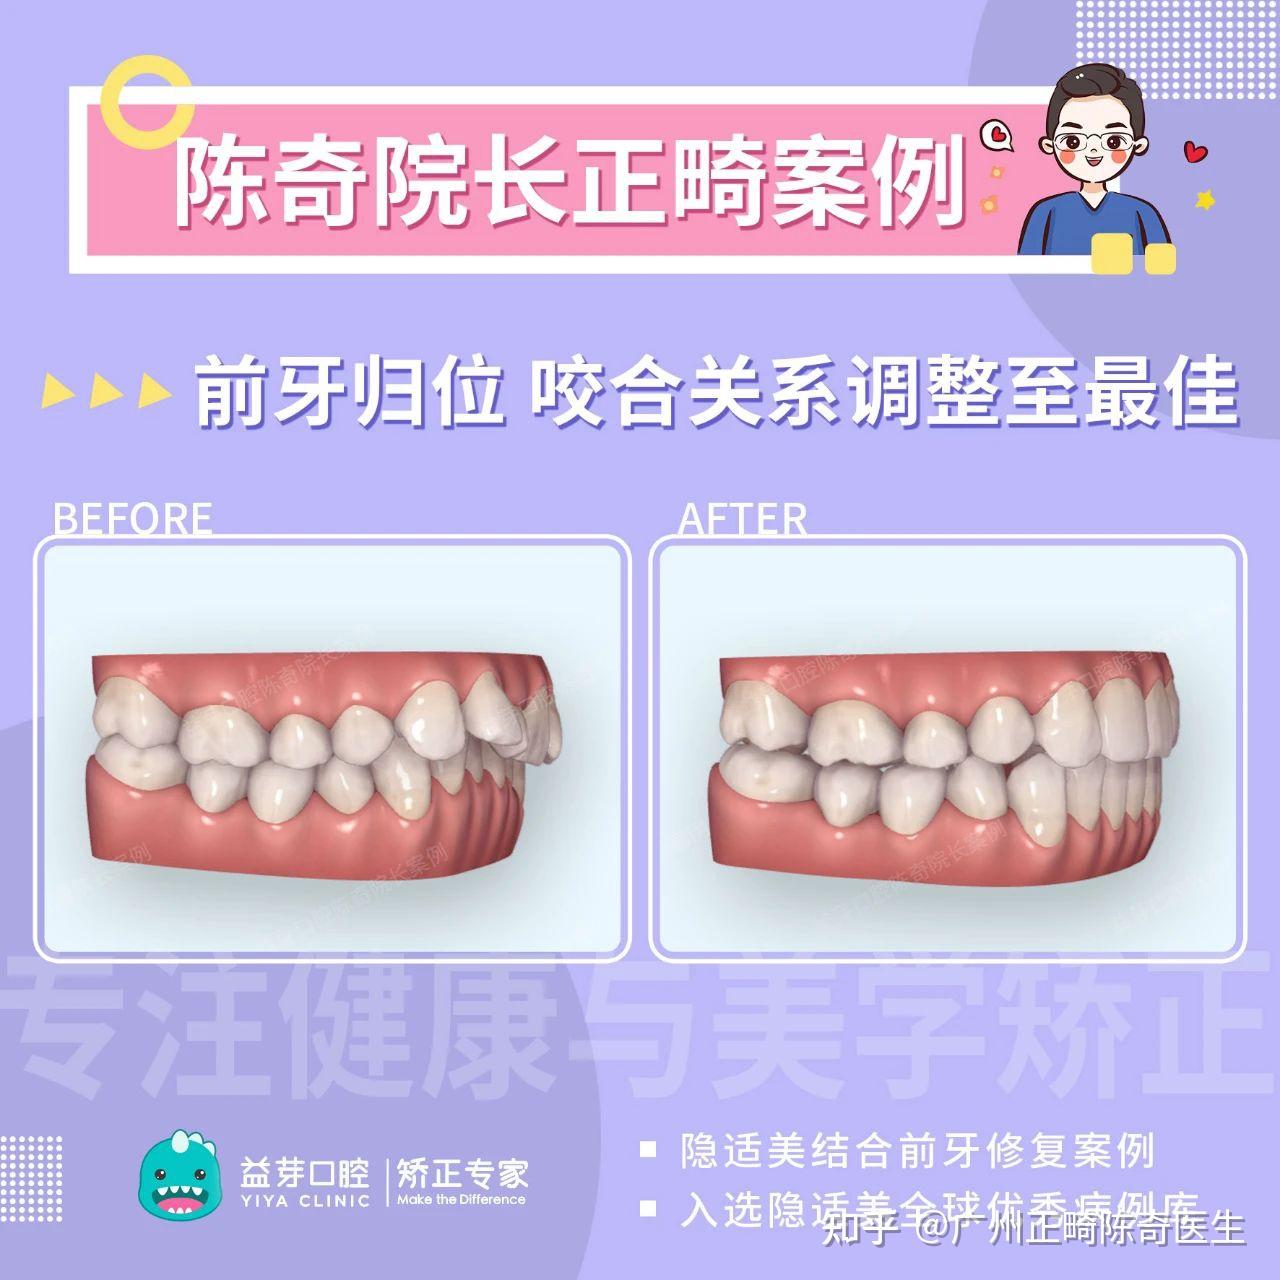 近七成中国孩子都有的“错颌畸形”，再不干预就晚了！ - 知乎